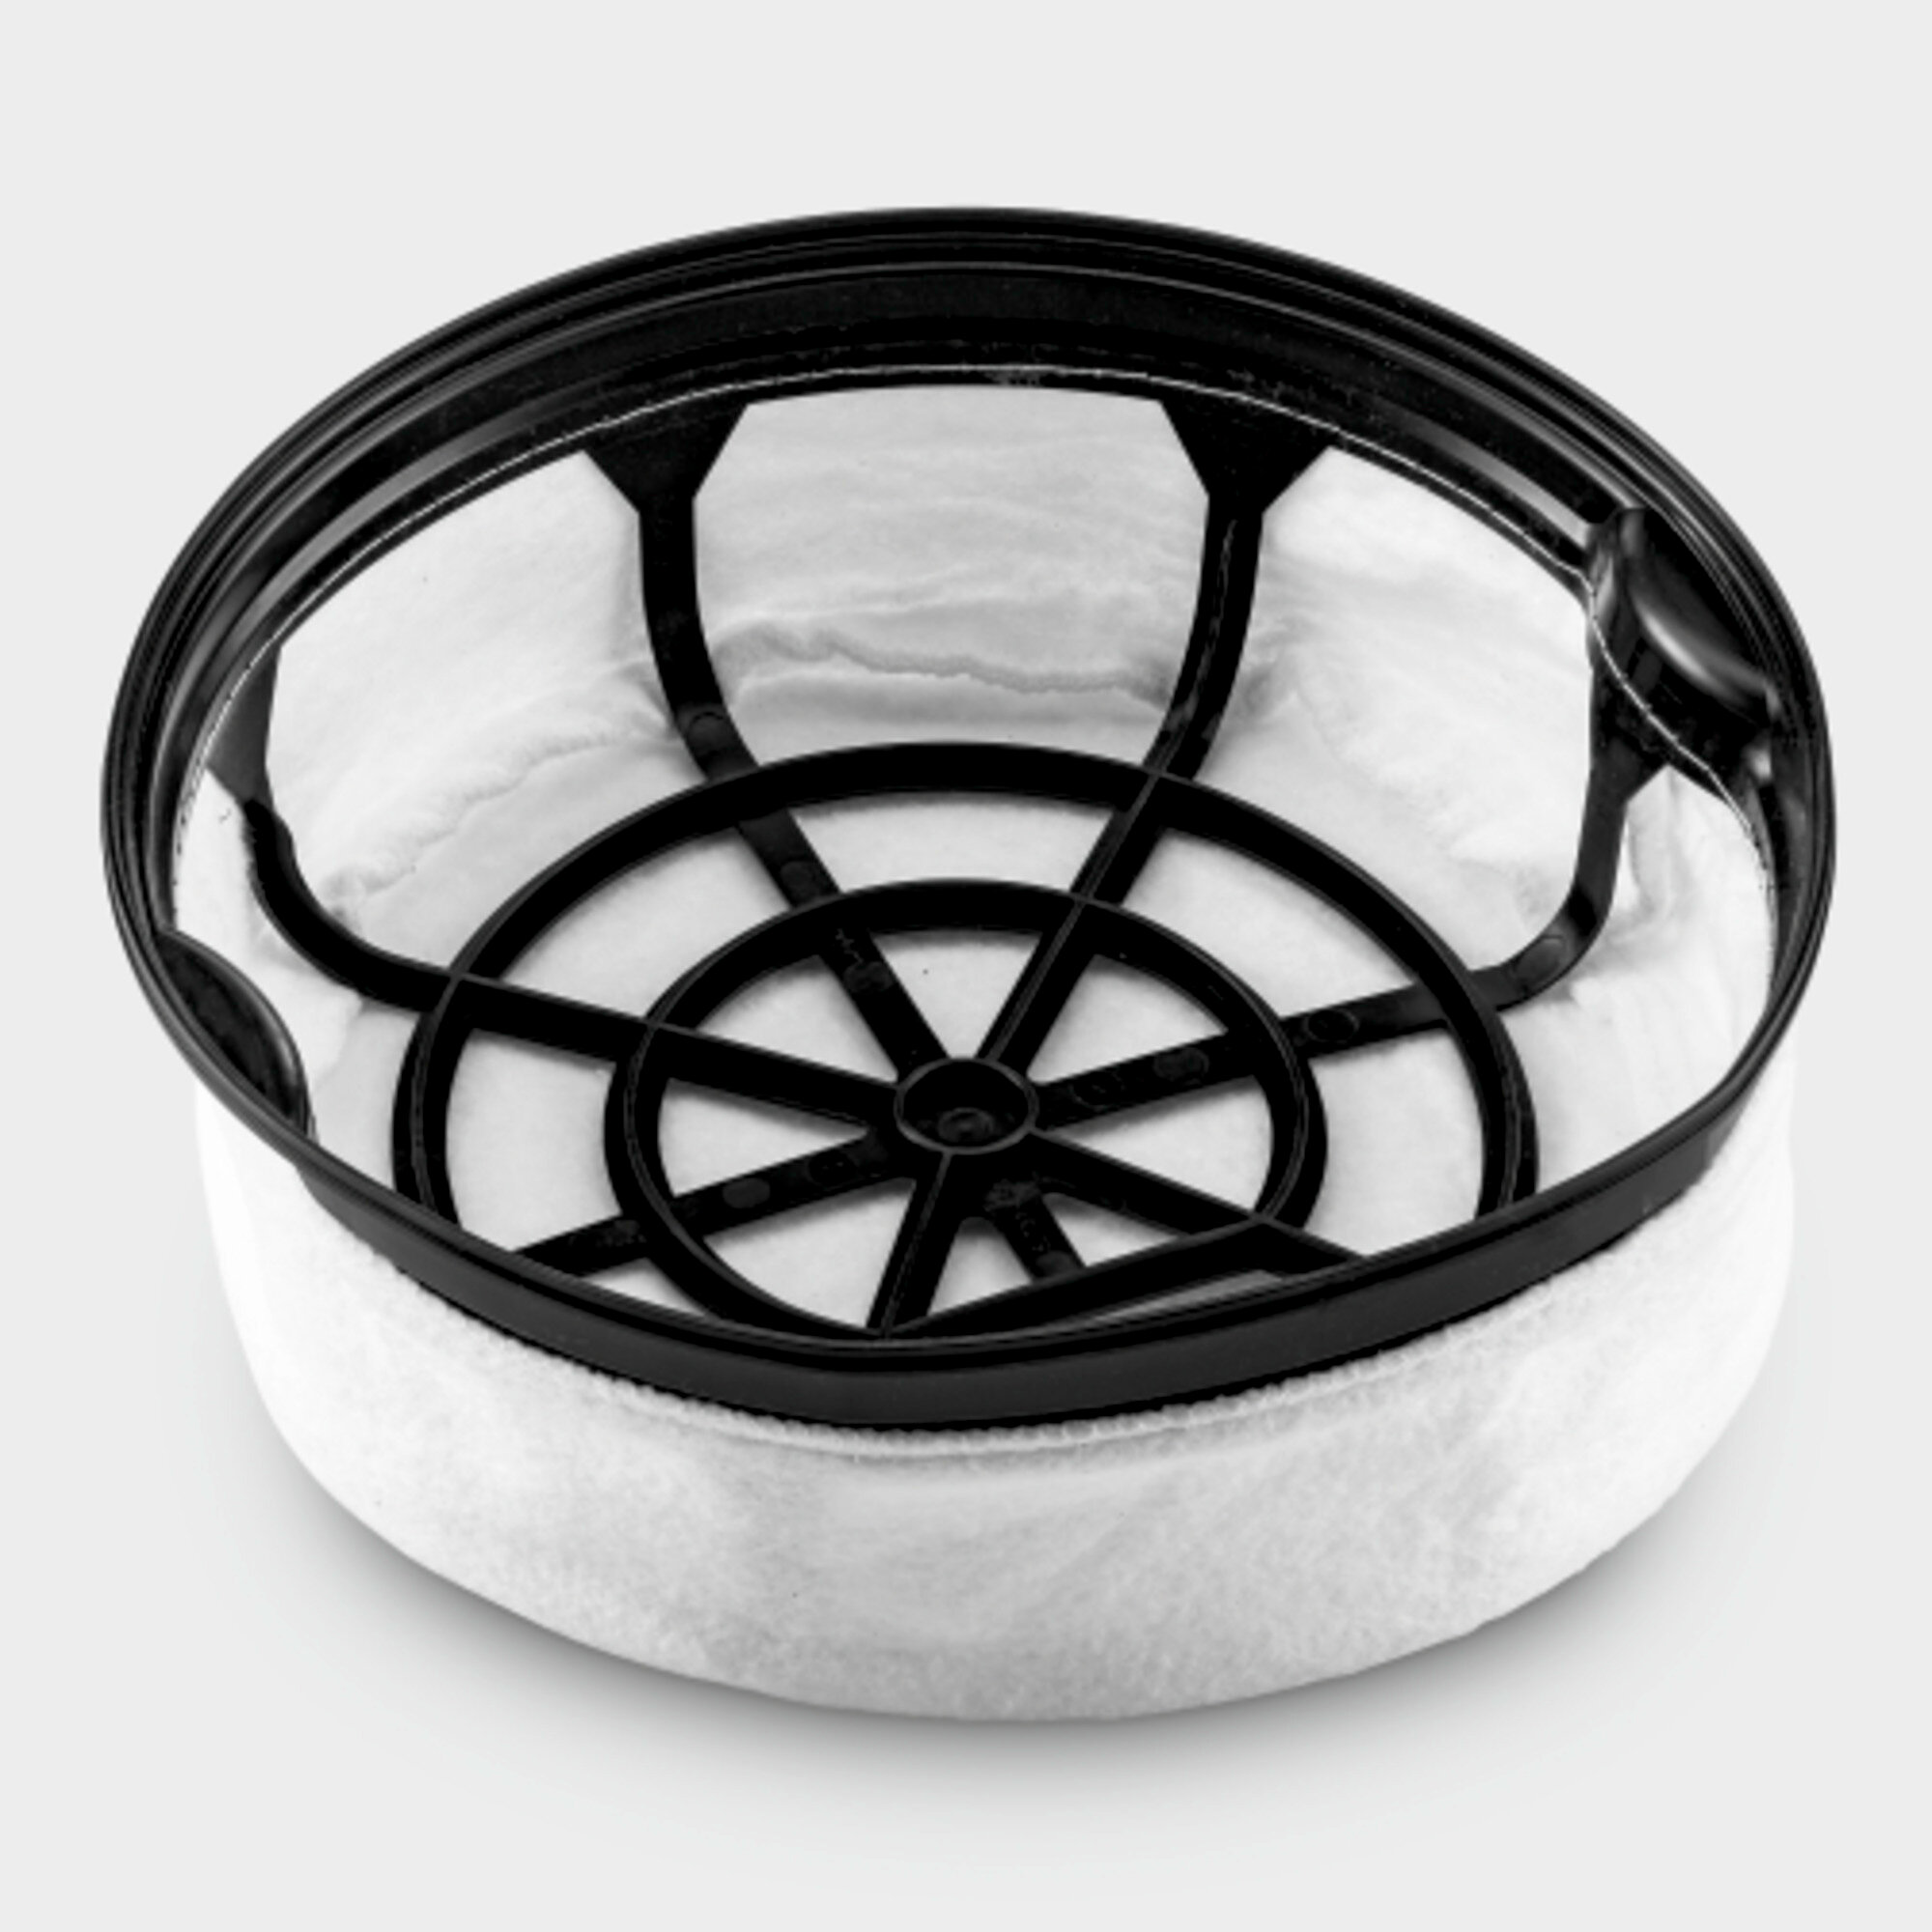 Nylonowy filtr koszykowy Karcher